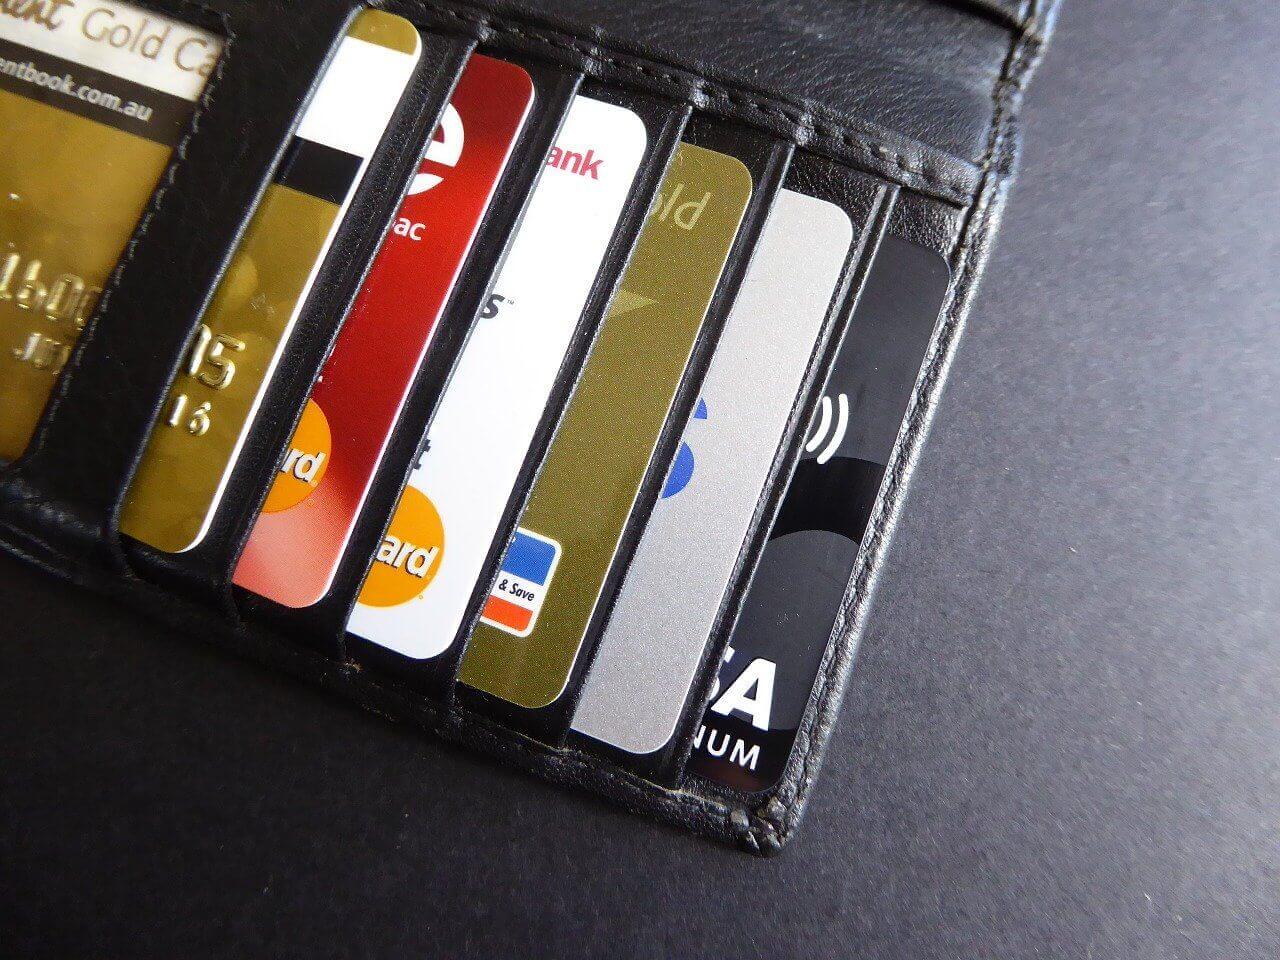 Går det att spara pengar med ett kreditkort?